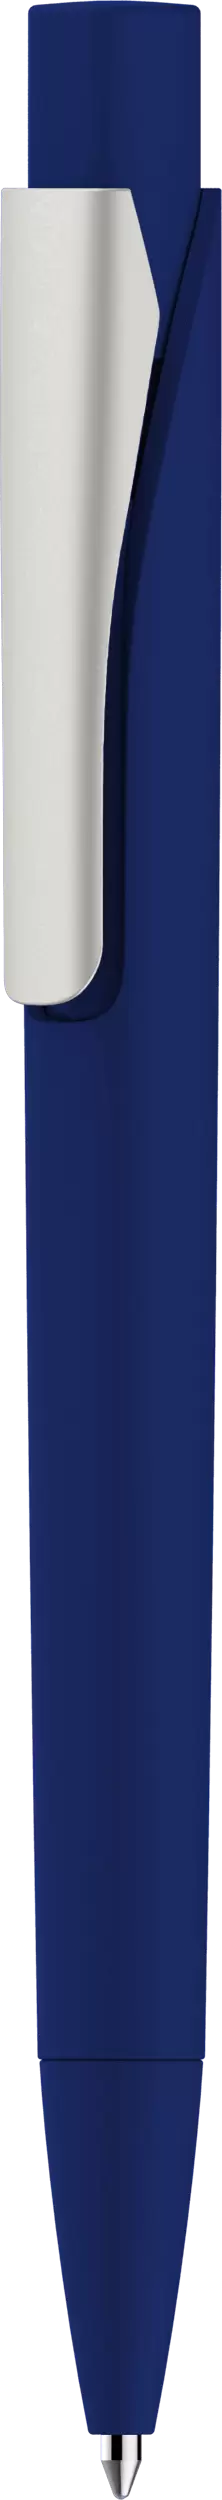 Ручка MASTER SOFT Темно-синяя 1040-14